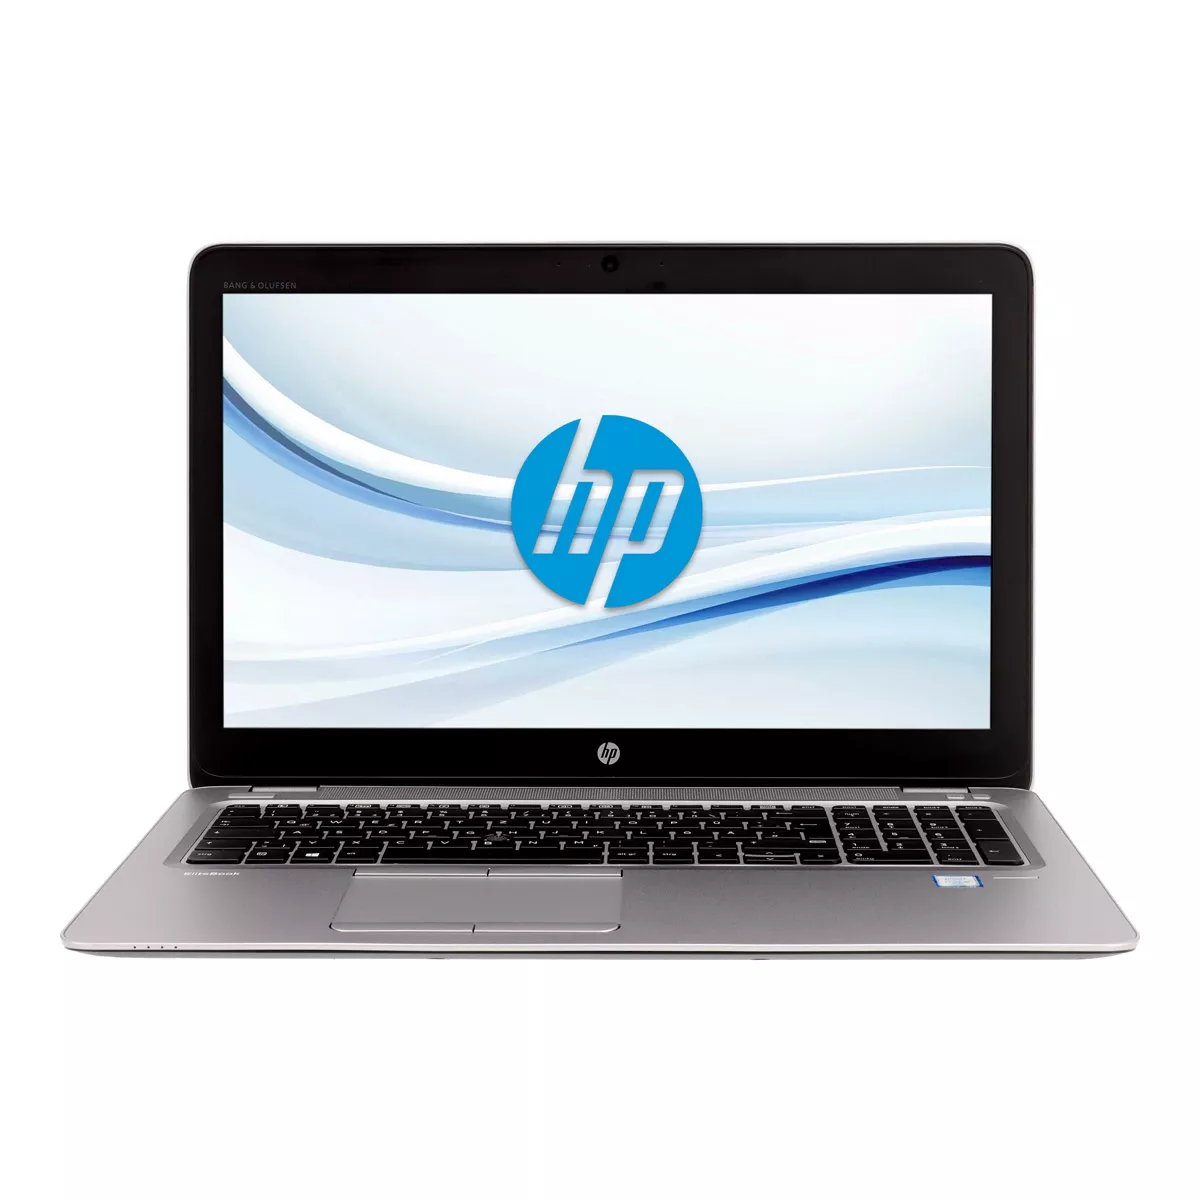 HP EliteBook 850 G4 Core i5 7300U Full-HD 240 GB M.2 SSD Webcam A